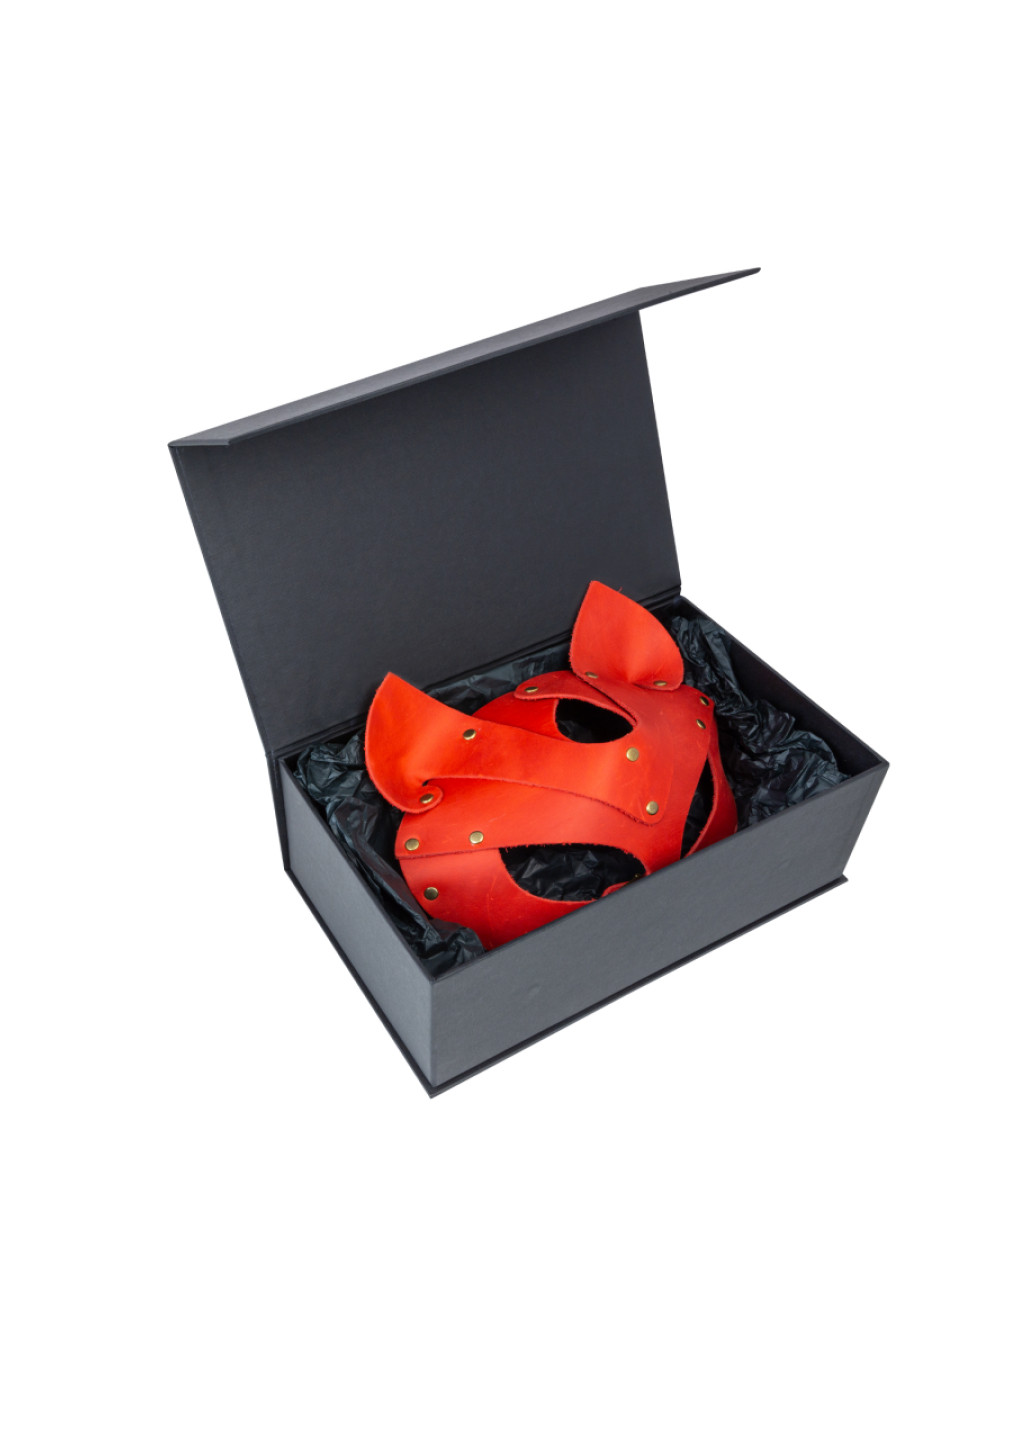 Премиум маска кошечки, натуральная кожа, красная, подарочная упаковка LOVECRAFT (252374805)